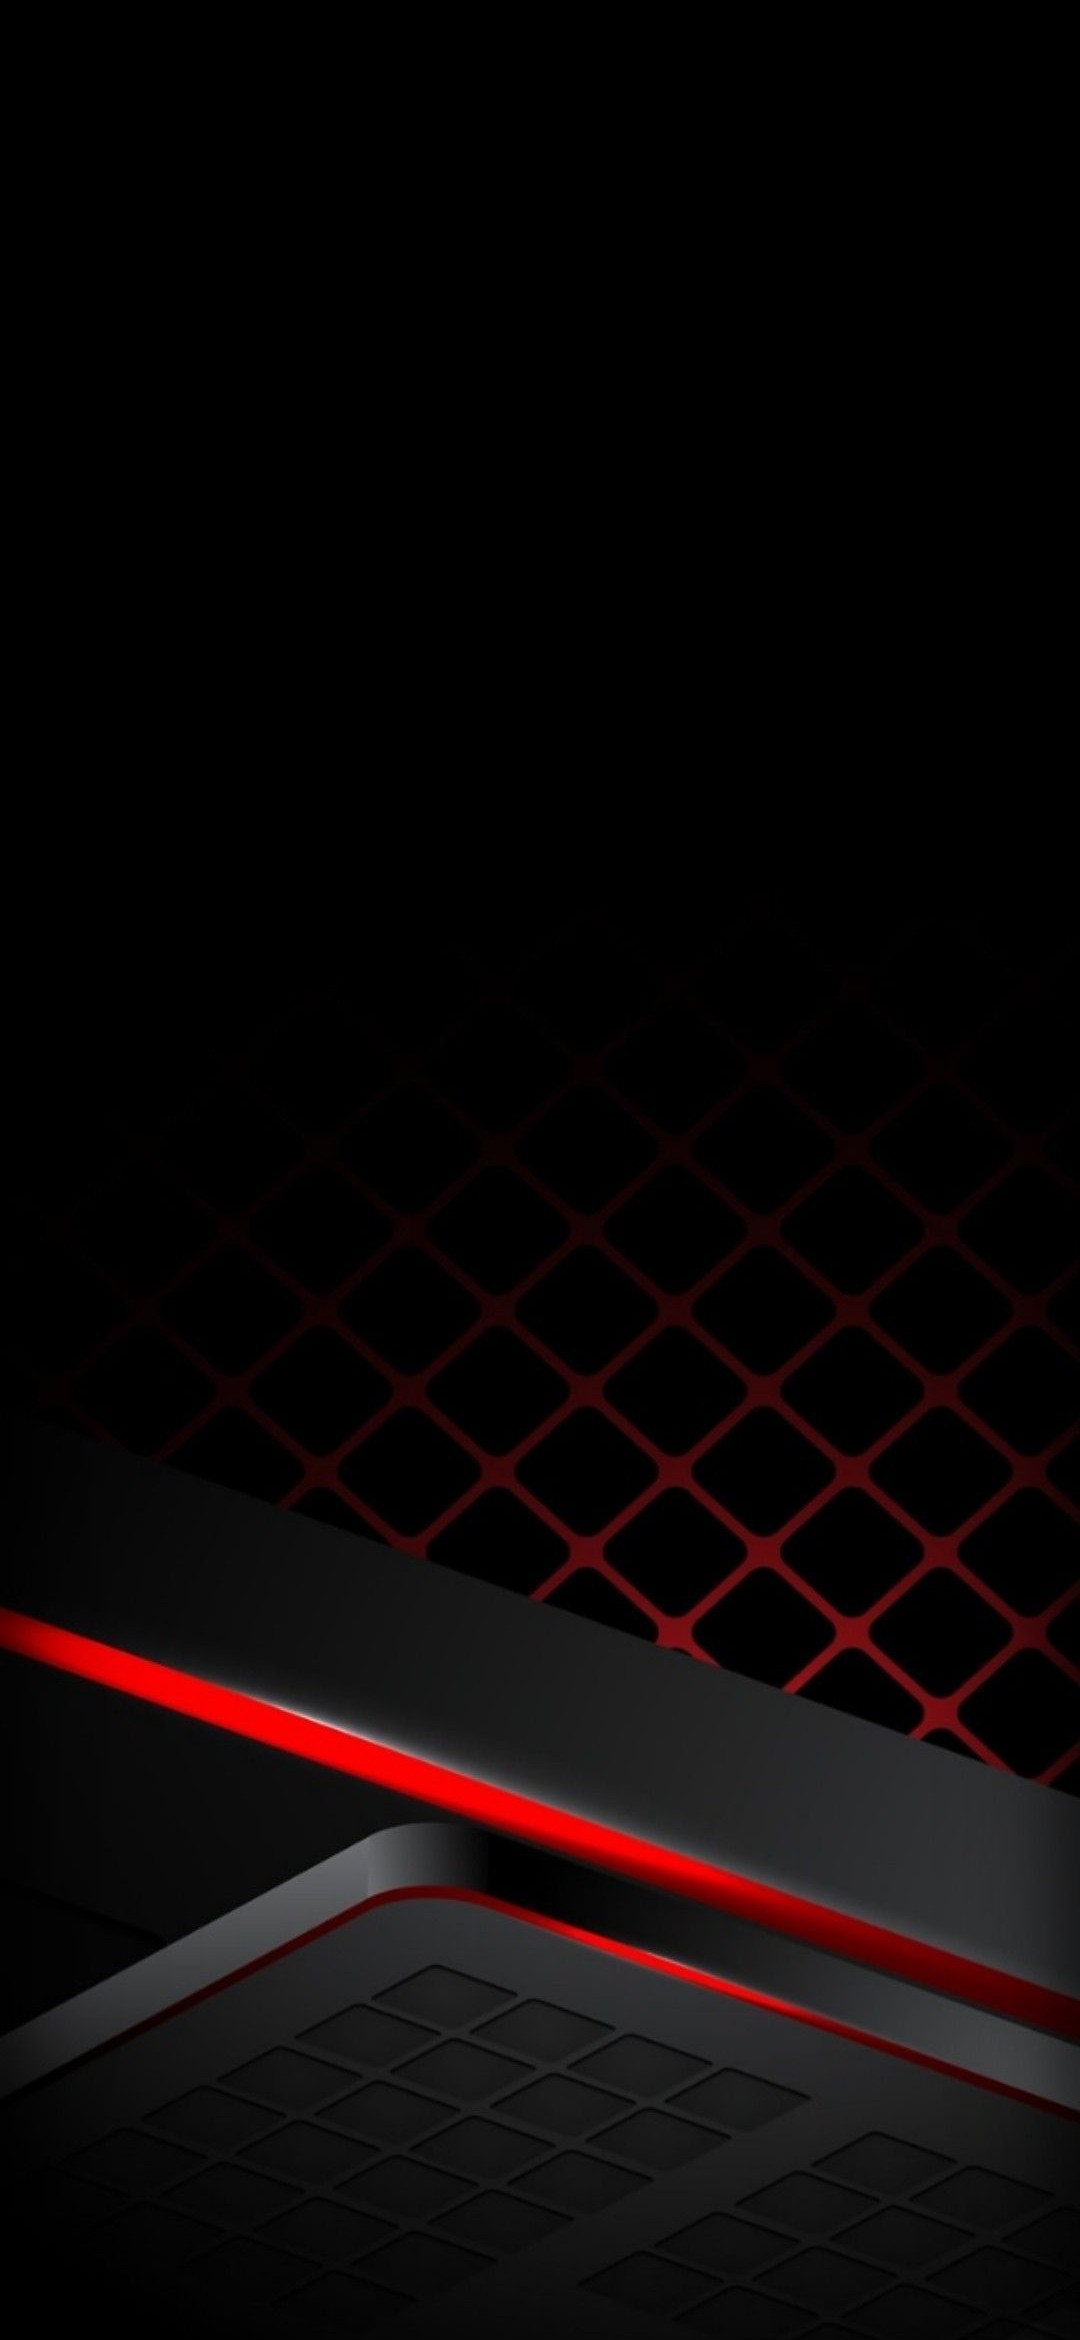 かっこいい黒と赤のテクスチャー Galaxy A30 Android 壁紙 待ち受け スマラン